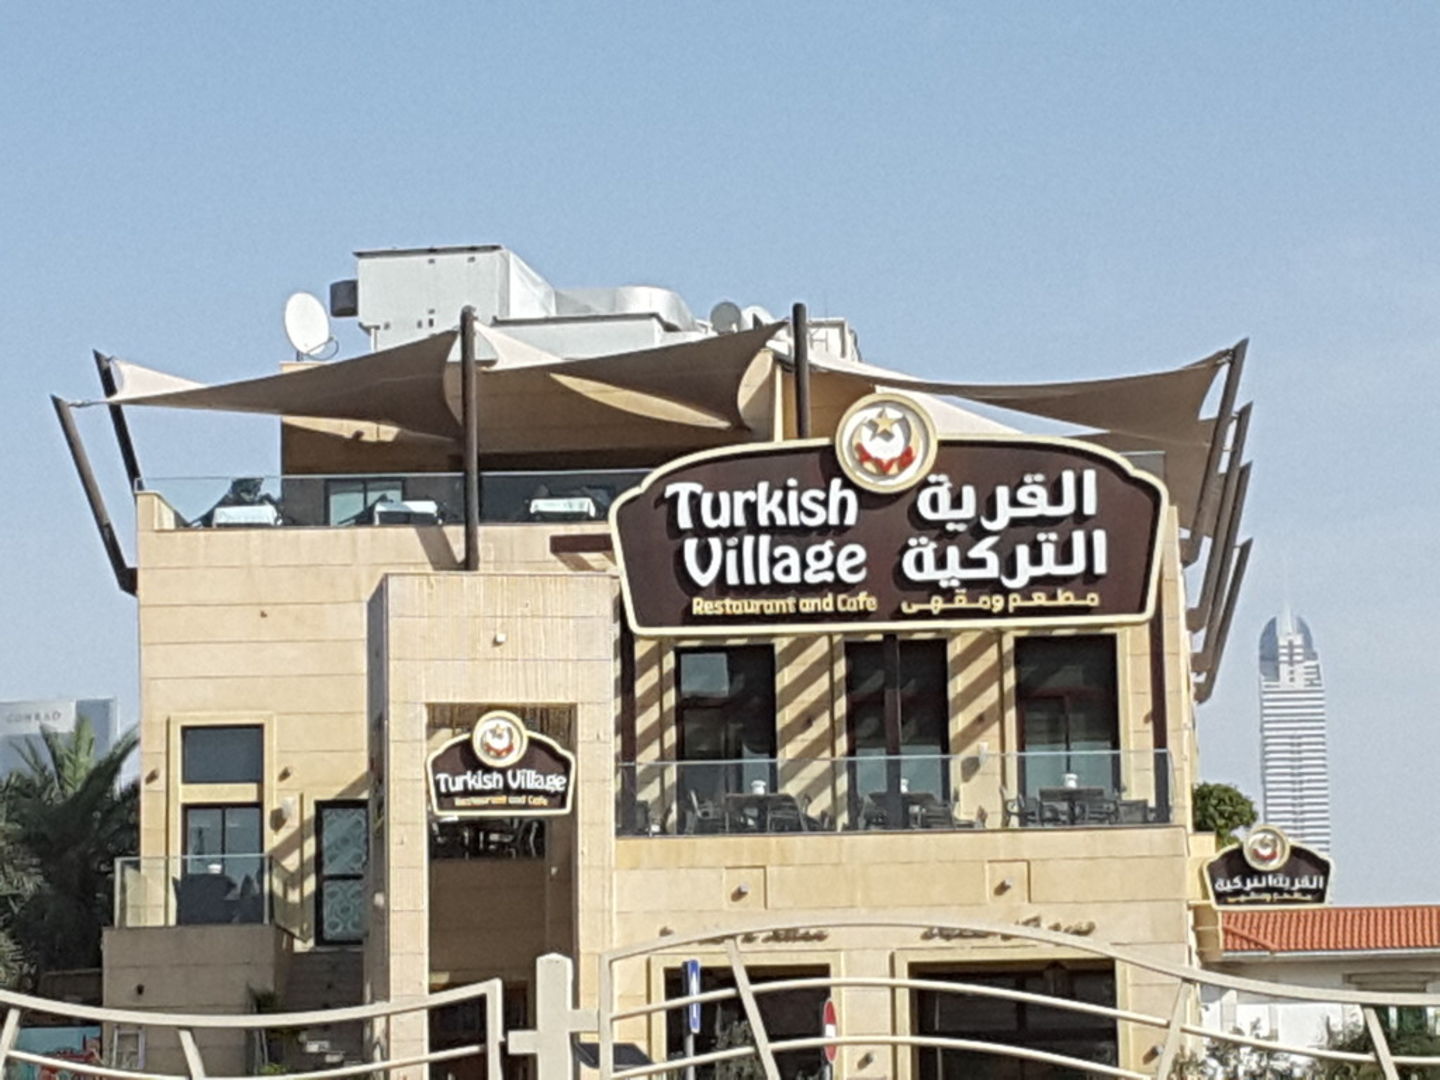 Turkish Village Restaurant & Cafe